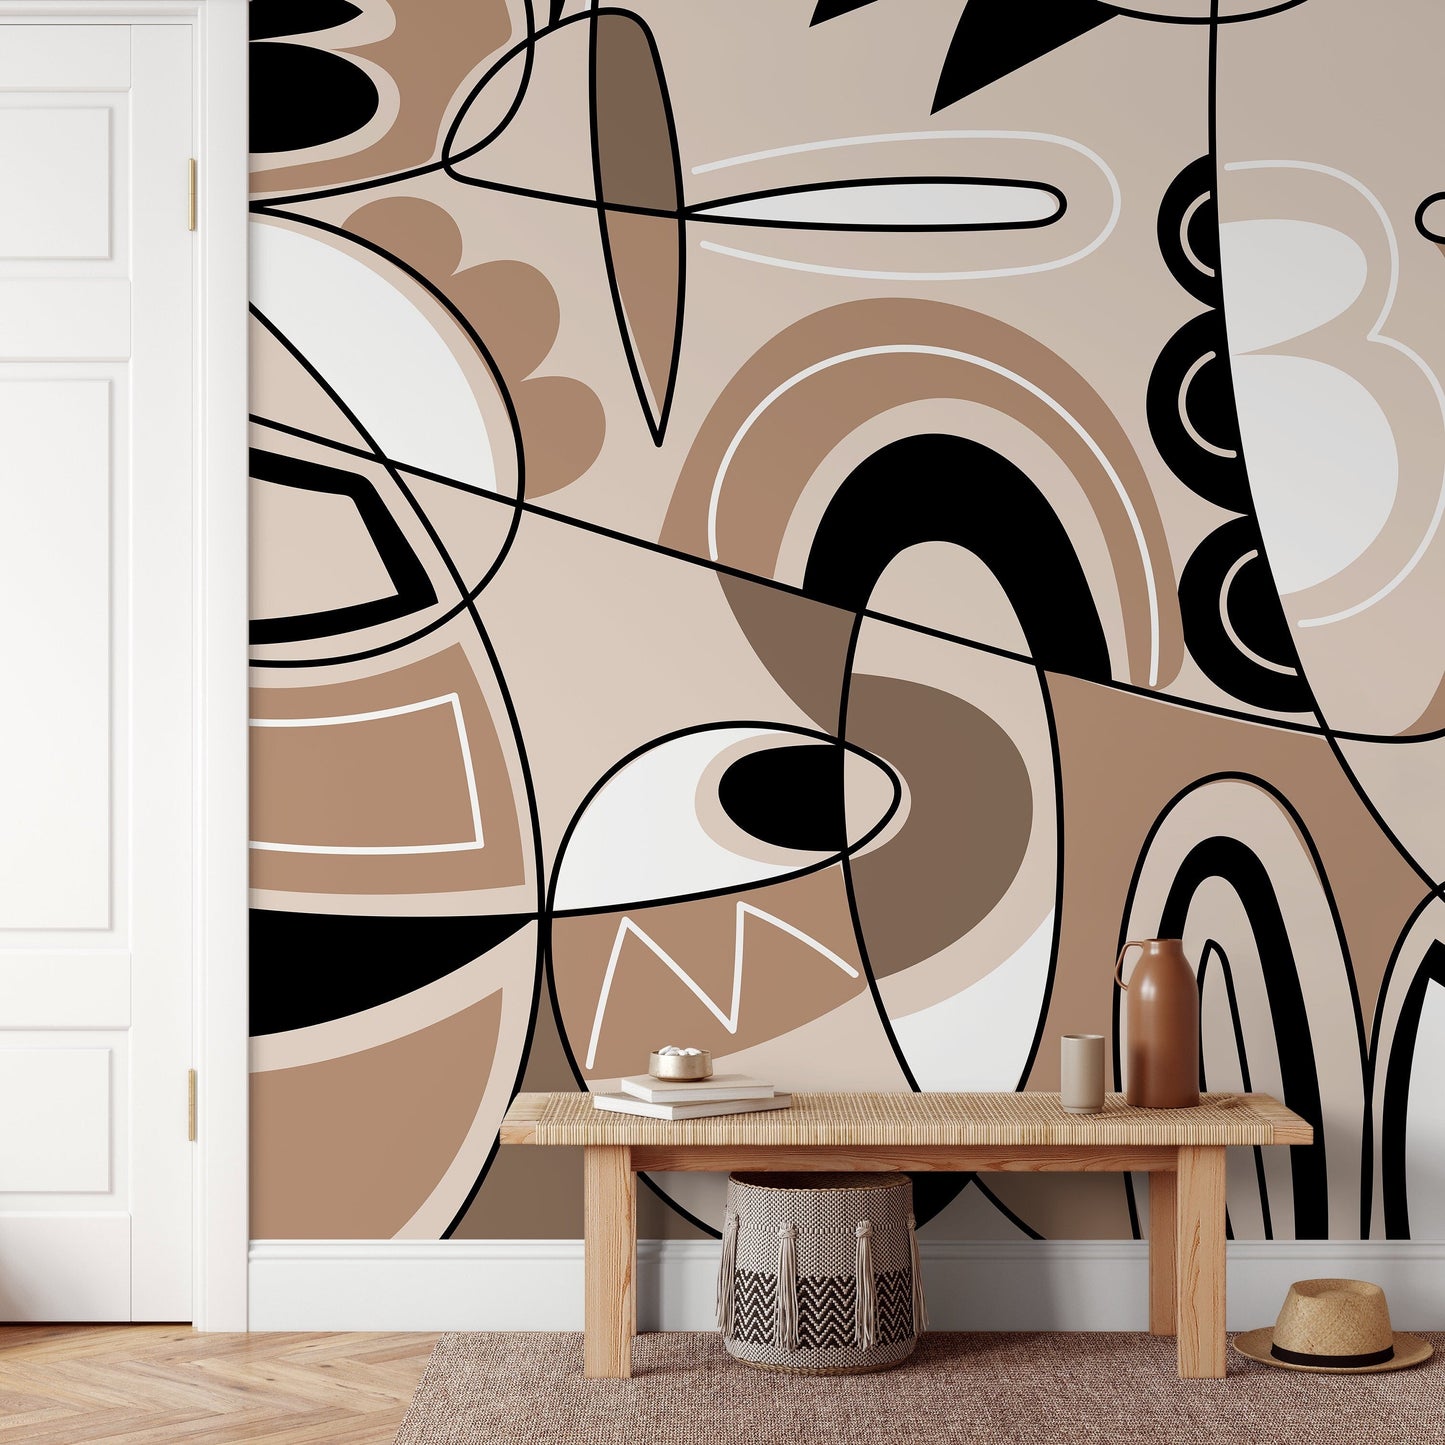 Modern Cubism Art Wallpaper Abstract Mural Peel and Stick Wallpaper Home Decor - D559